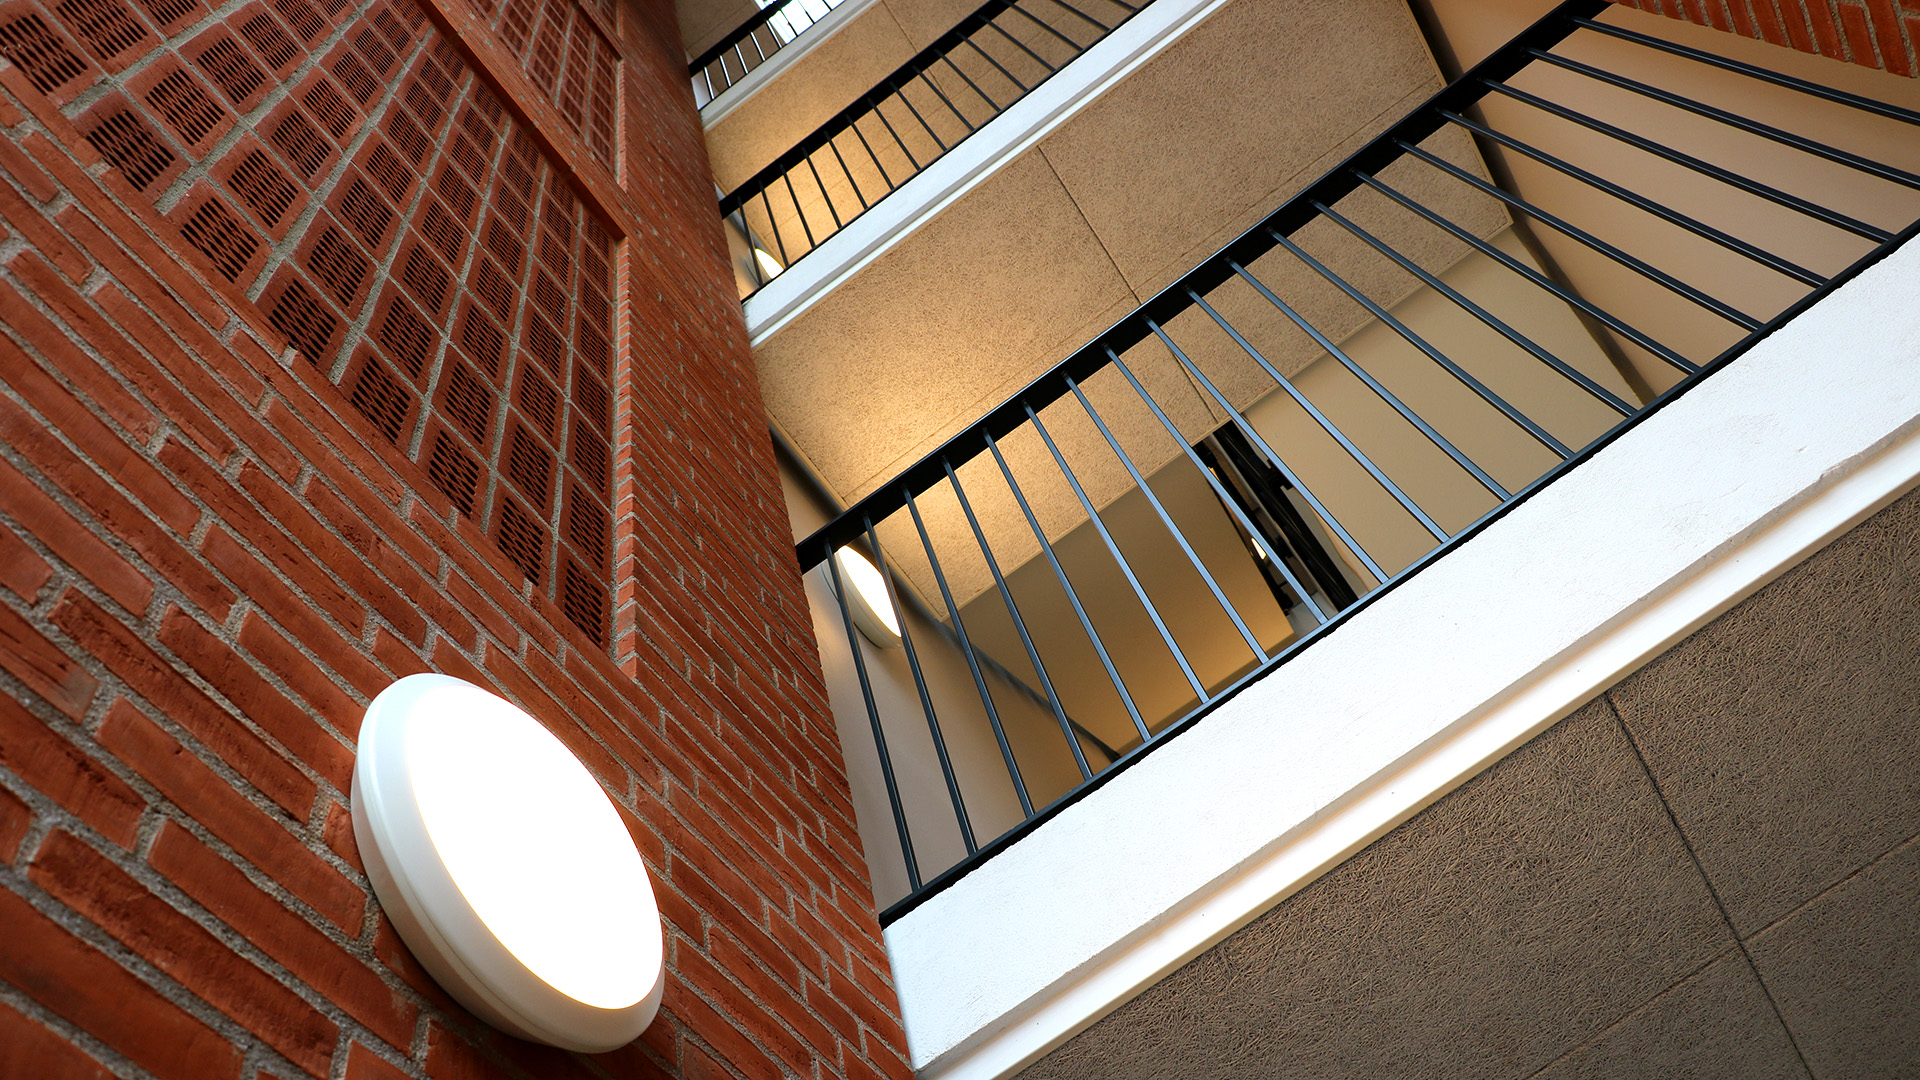 Boligfoto af etage trappeopgang hos Boligselskabet Sydfyn afdeling 7504 Jægermarken i Svendborg